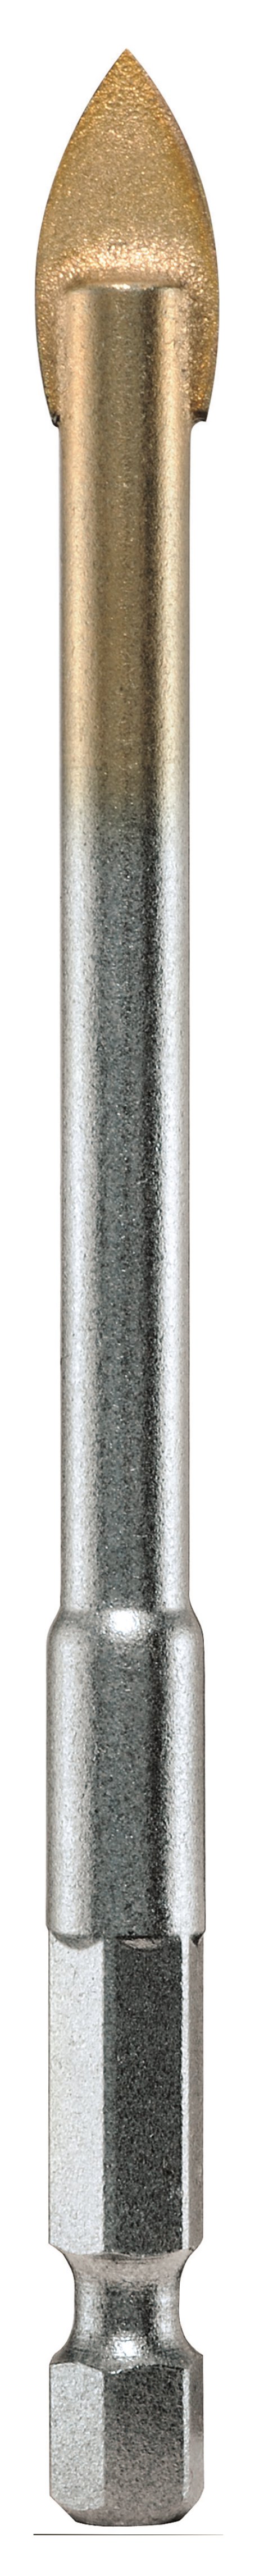 ALPEN Glasbohrer SB ⌀ 4 mm